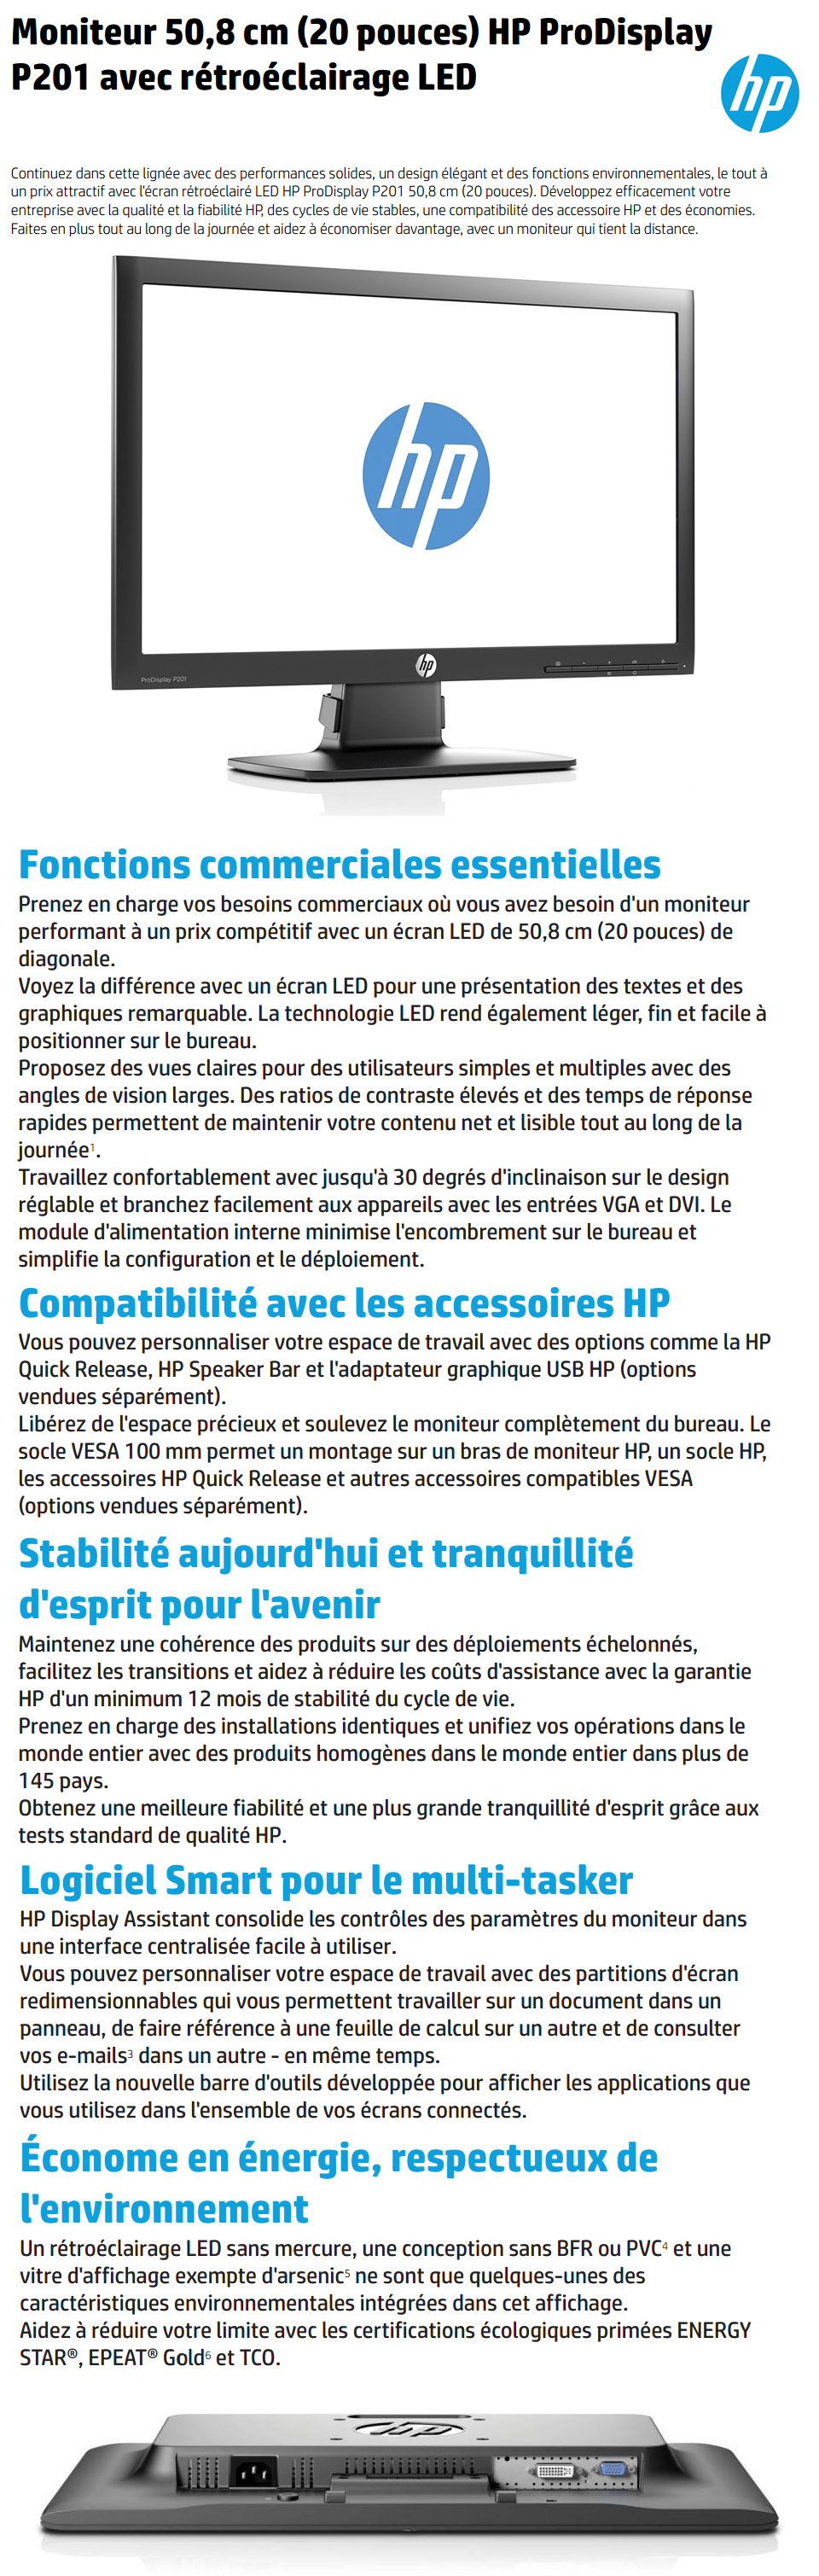 Acheter Moniteur LED rétroéclairé HP ProDisplay P201, 20 pouces (C9F26AS) Maroc